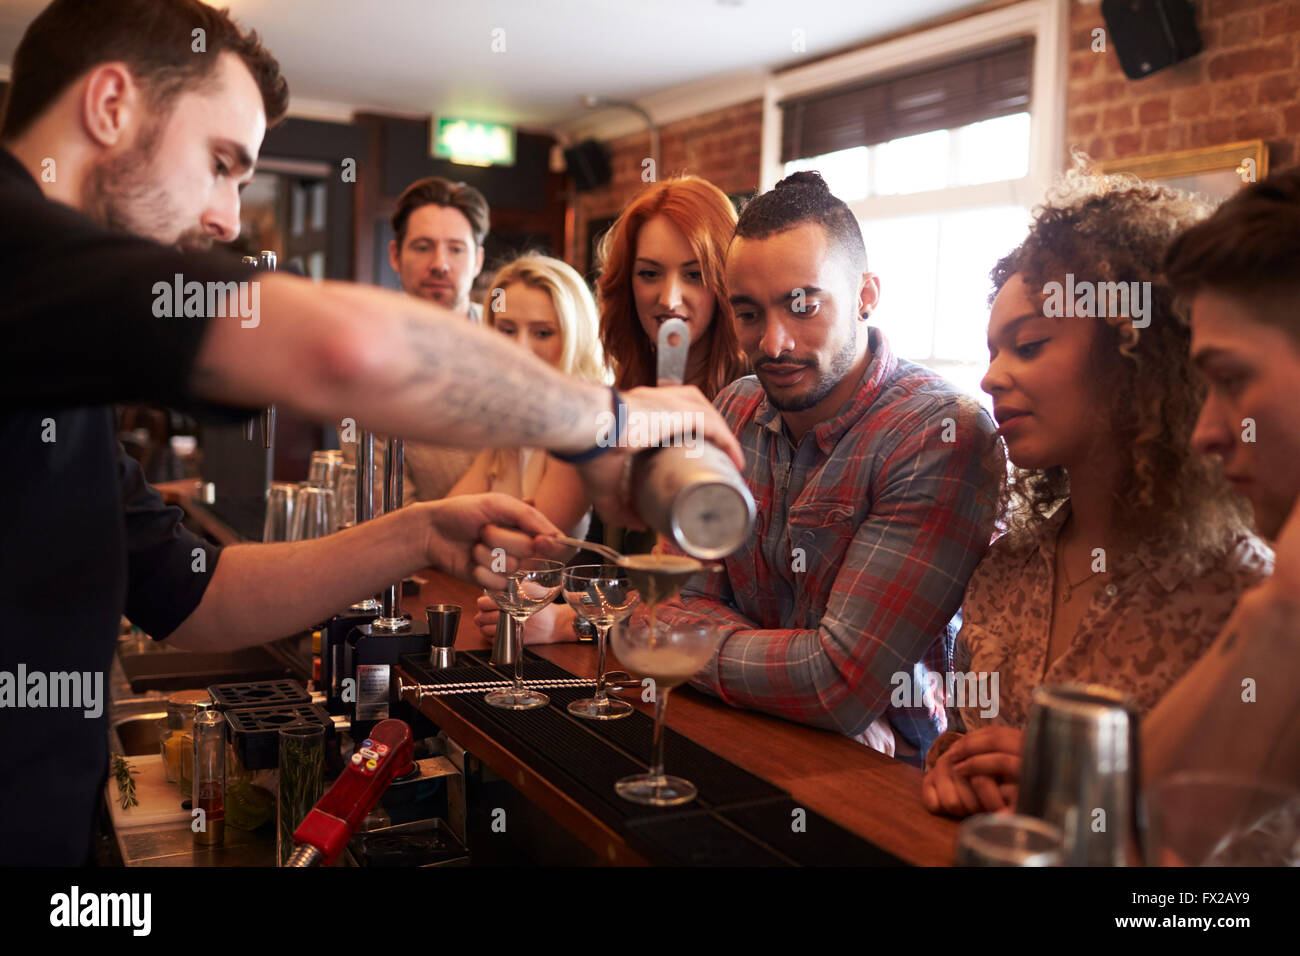 Cantinero dando lecciones de preparación de cócteles a los amigos en el bar Foto de stock